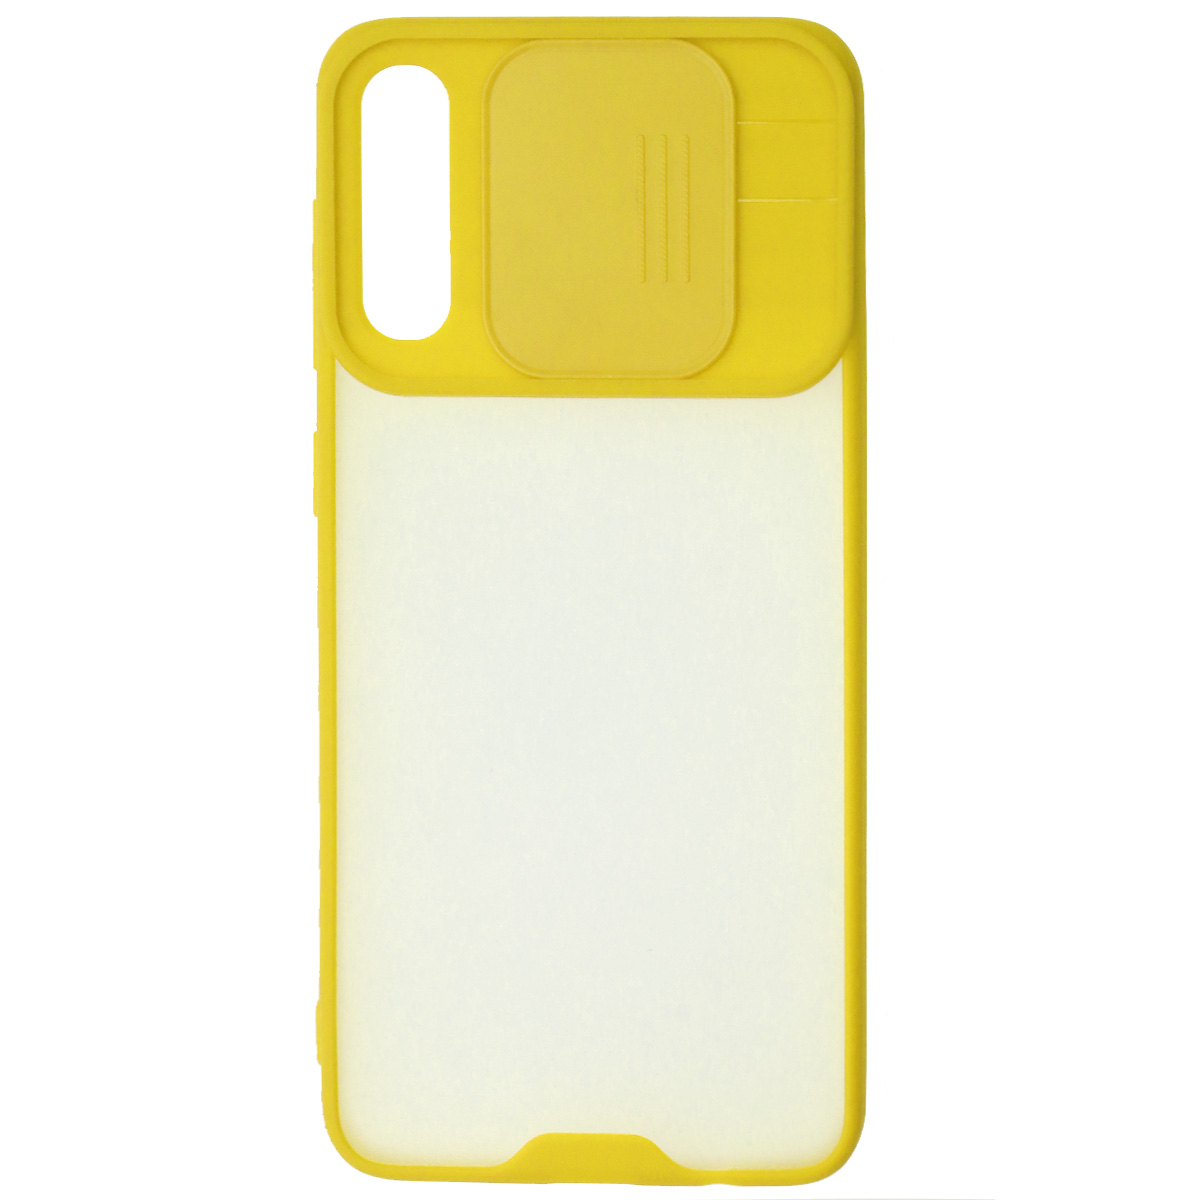 Чехол накладка LIFE TIME для SAMSUNG Galaxy A50 (SM-A505), A30s (SM-A307), A50s (SM-A507), силикон, пластик, матовый, со шторкой для защиты задней камеры, цвет окантовки желтый